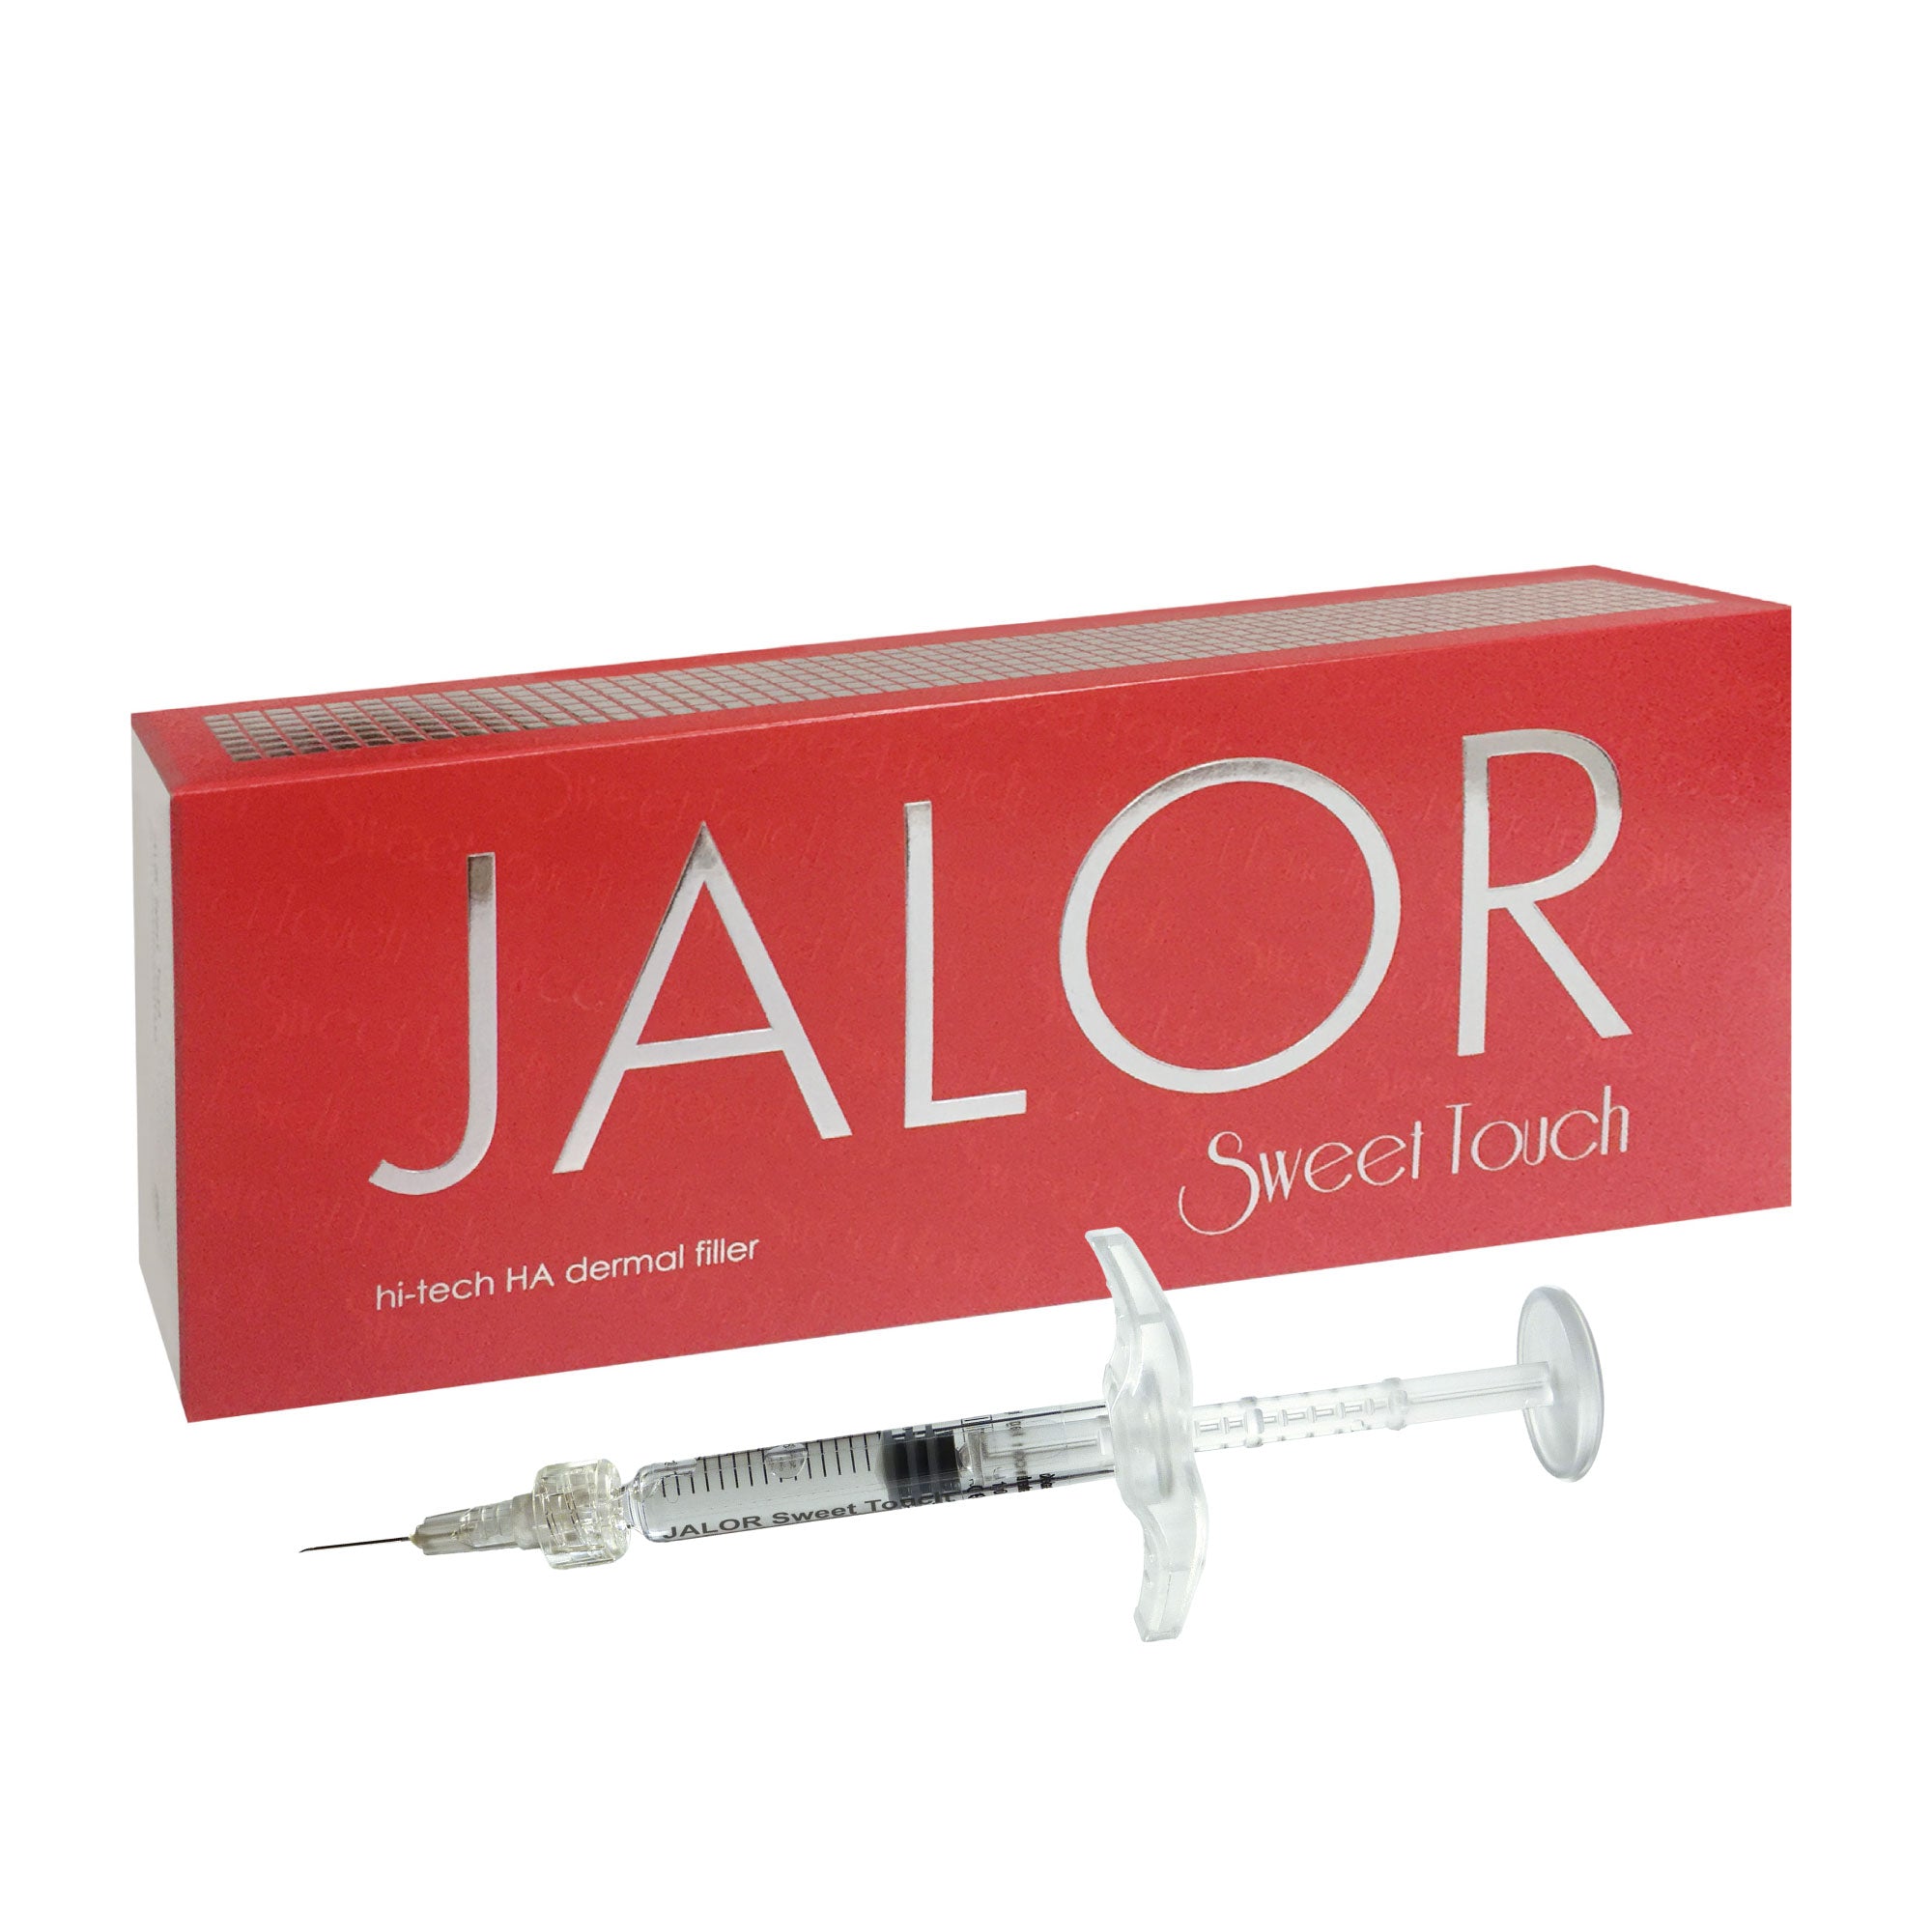 JALOR SWEET TOUCH - Hyaluronic Acid Dermal Filler exp. 24/08